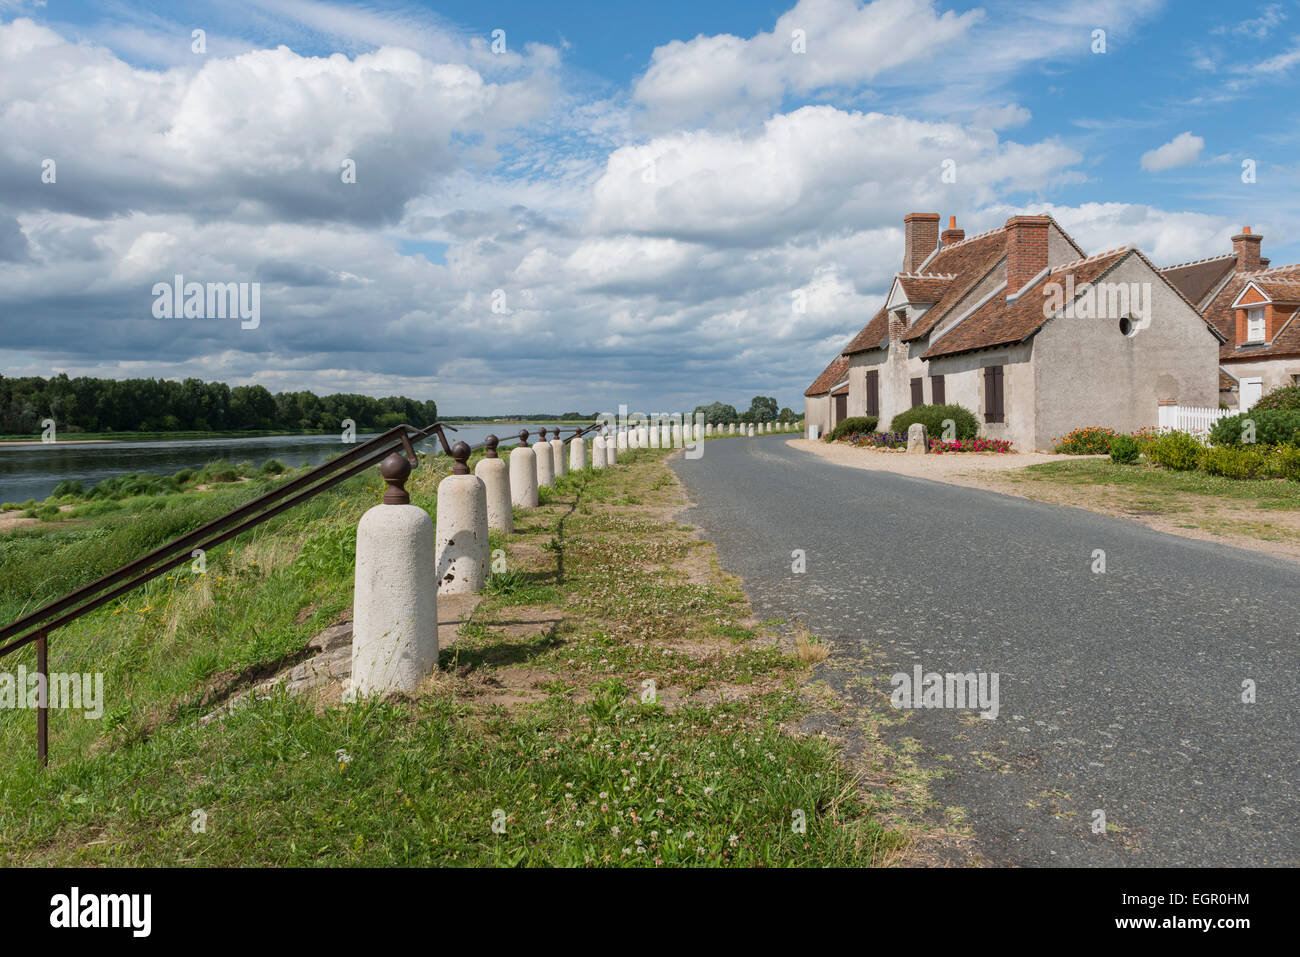 Dyke, route et maisons près de la Loire en France. Beau ciel bleu avec des nuages. Banque D'Images